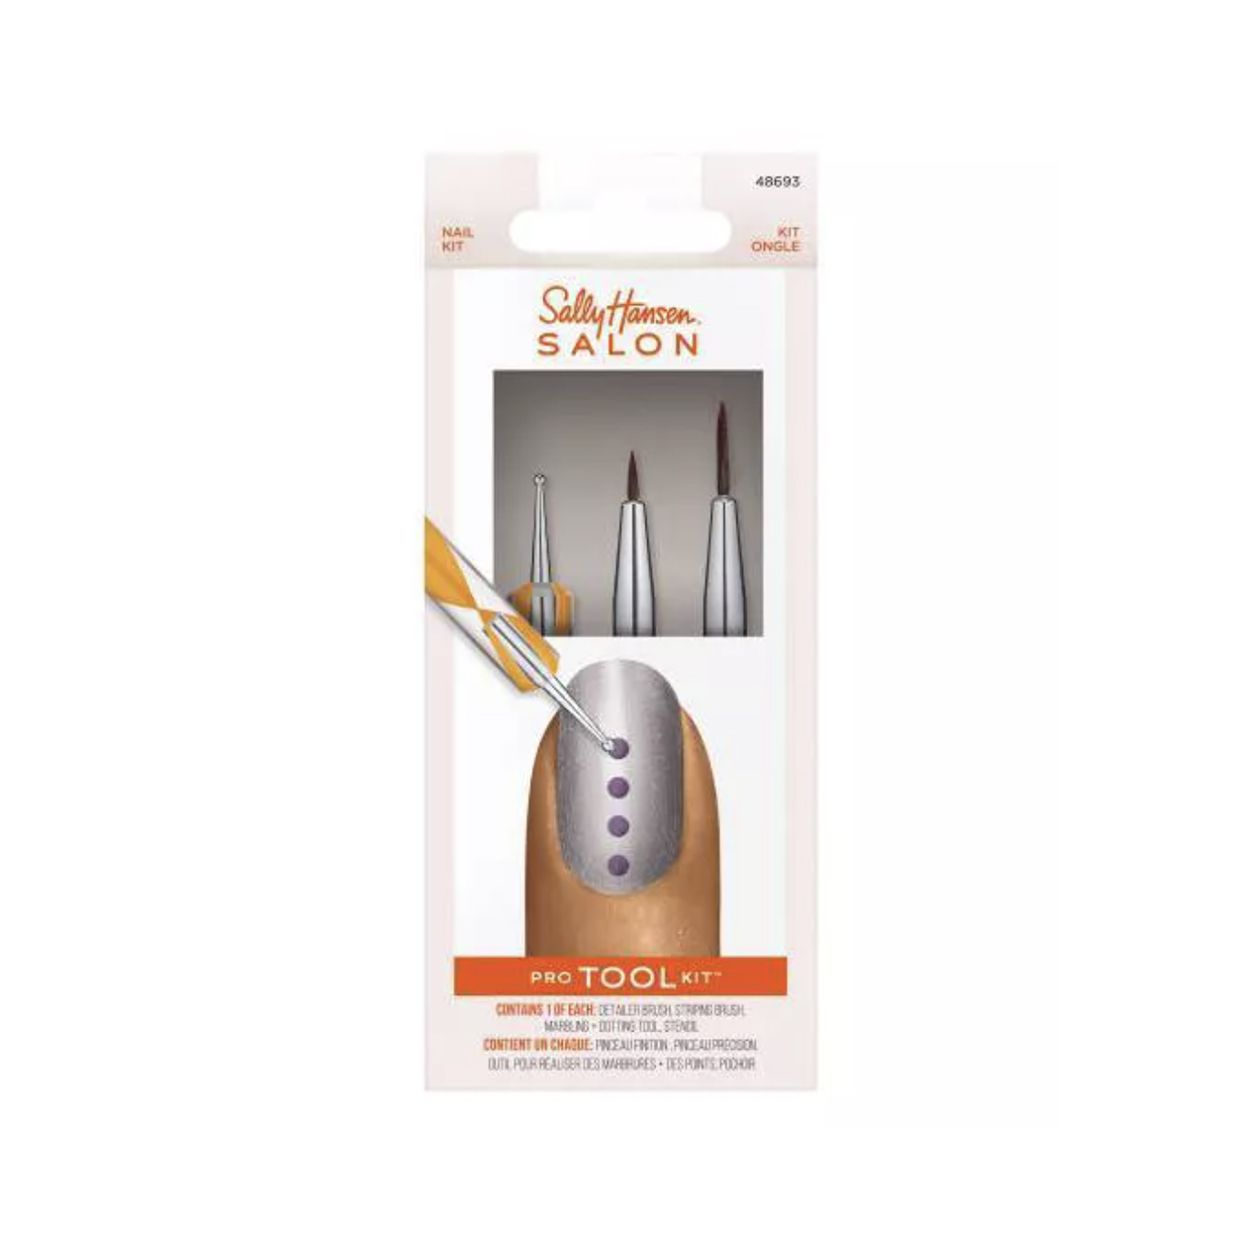 Sally Hansen Salon Pro Nail Tool Kit